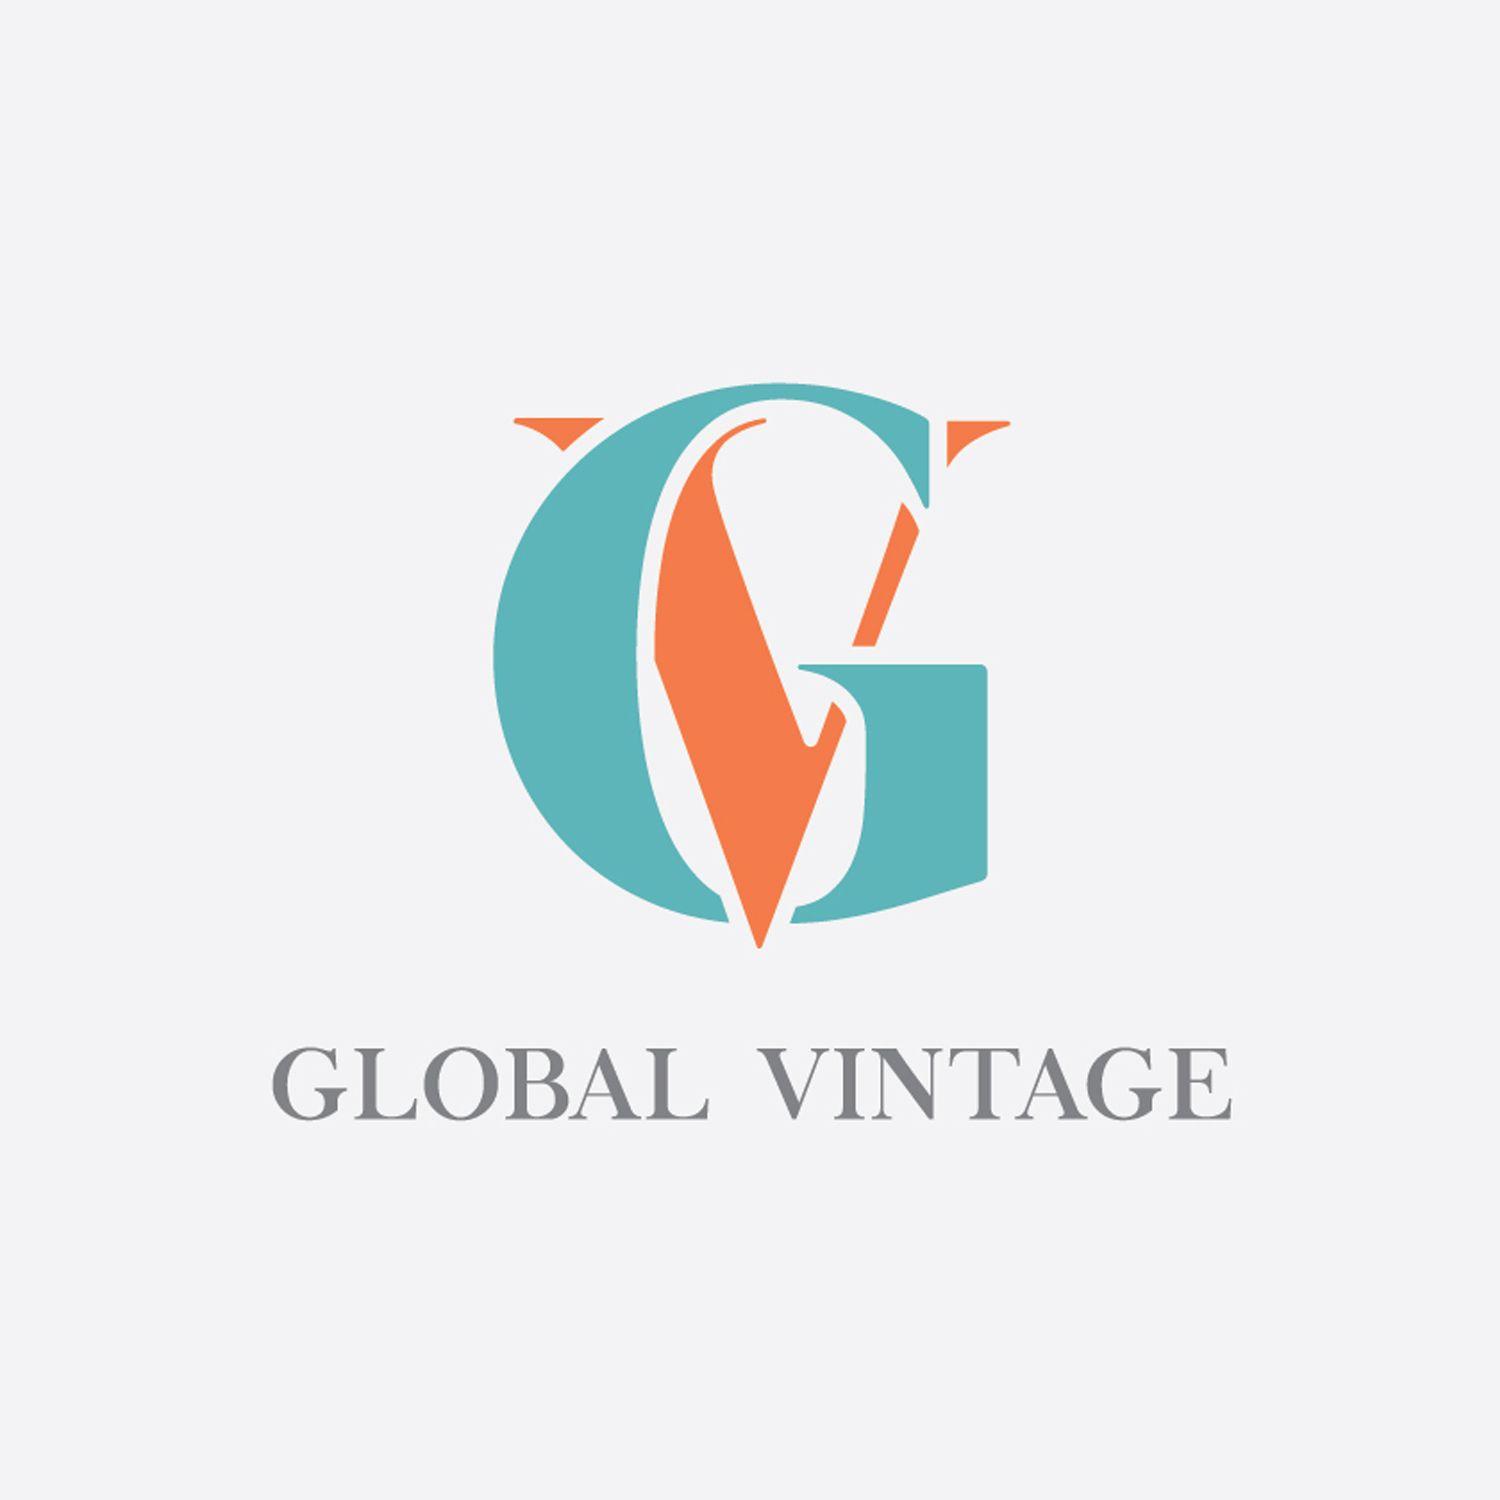 GV Logo - Upmarket, Playful, Events Logo Design for Global Vintage or GV by ...